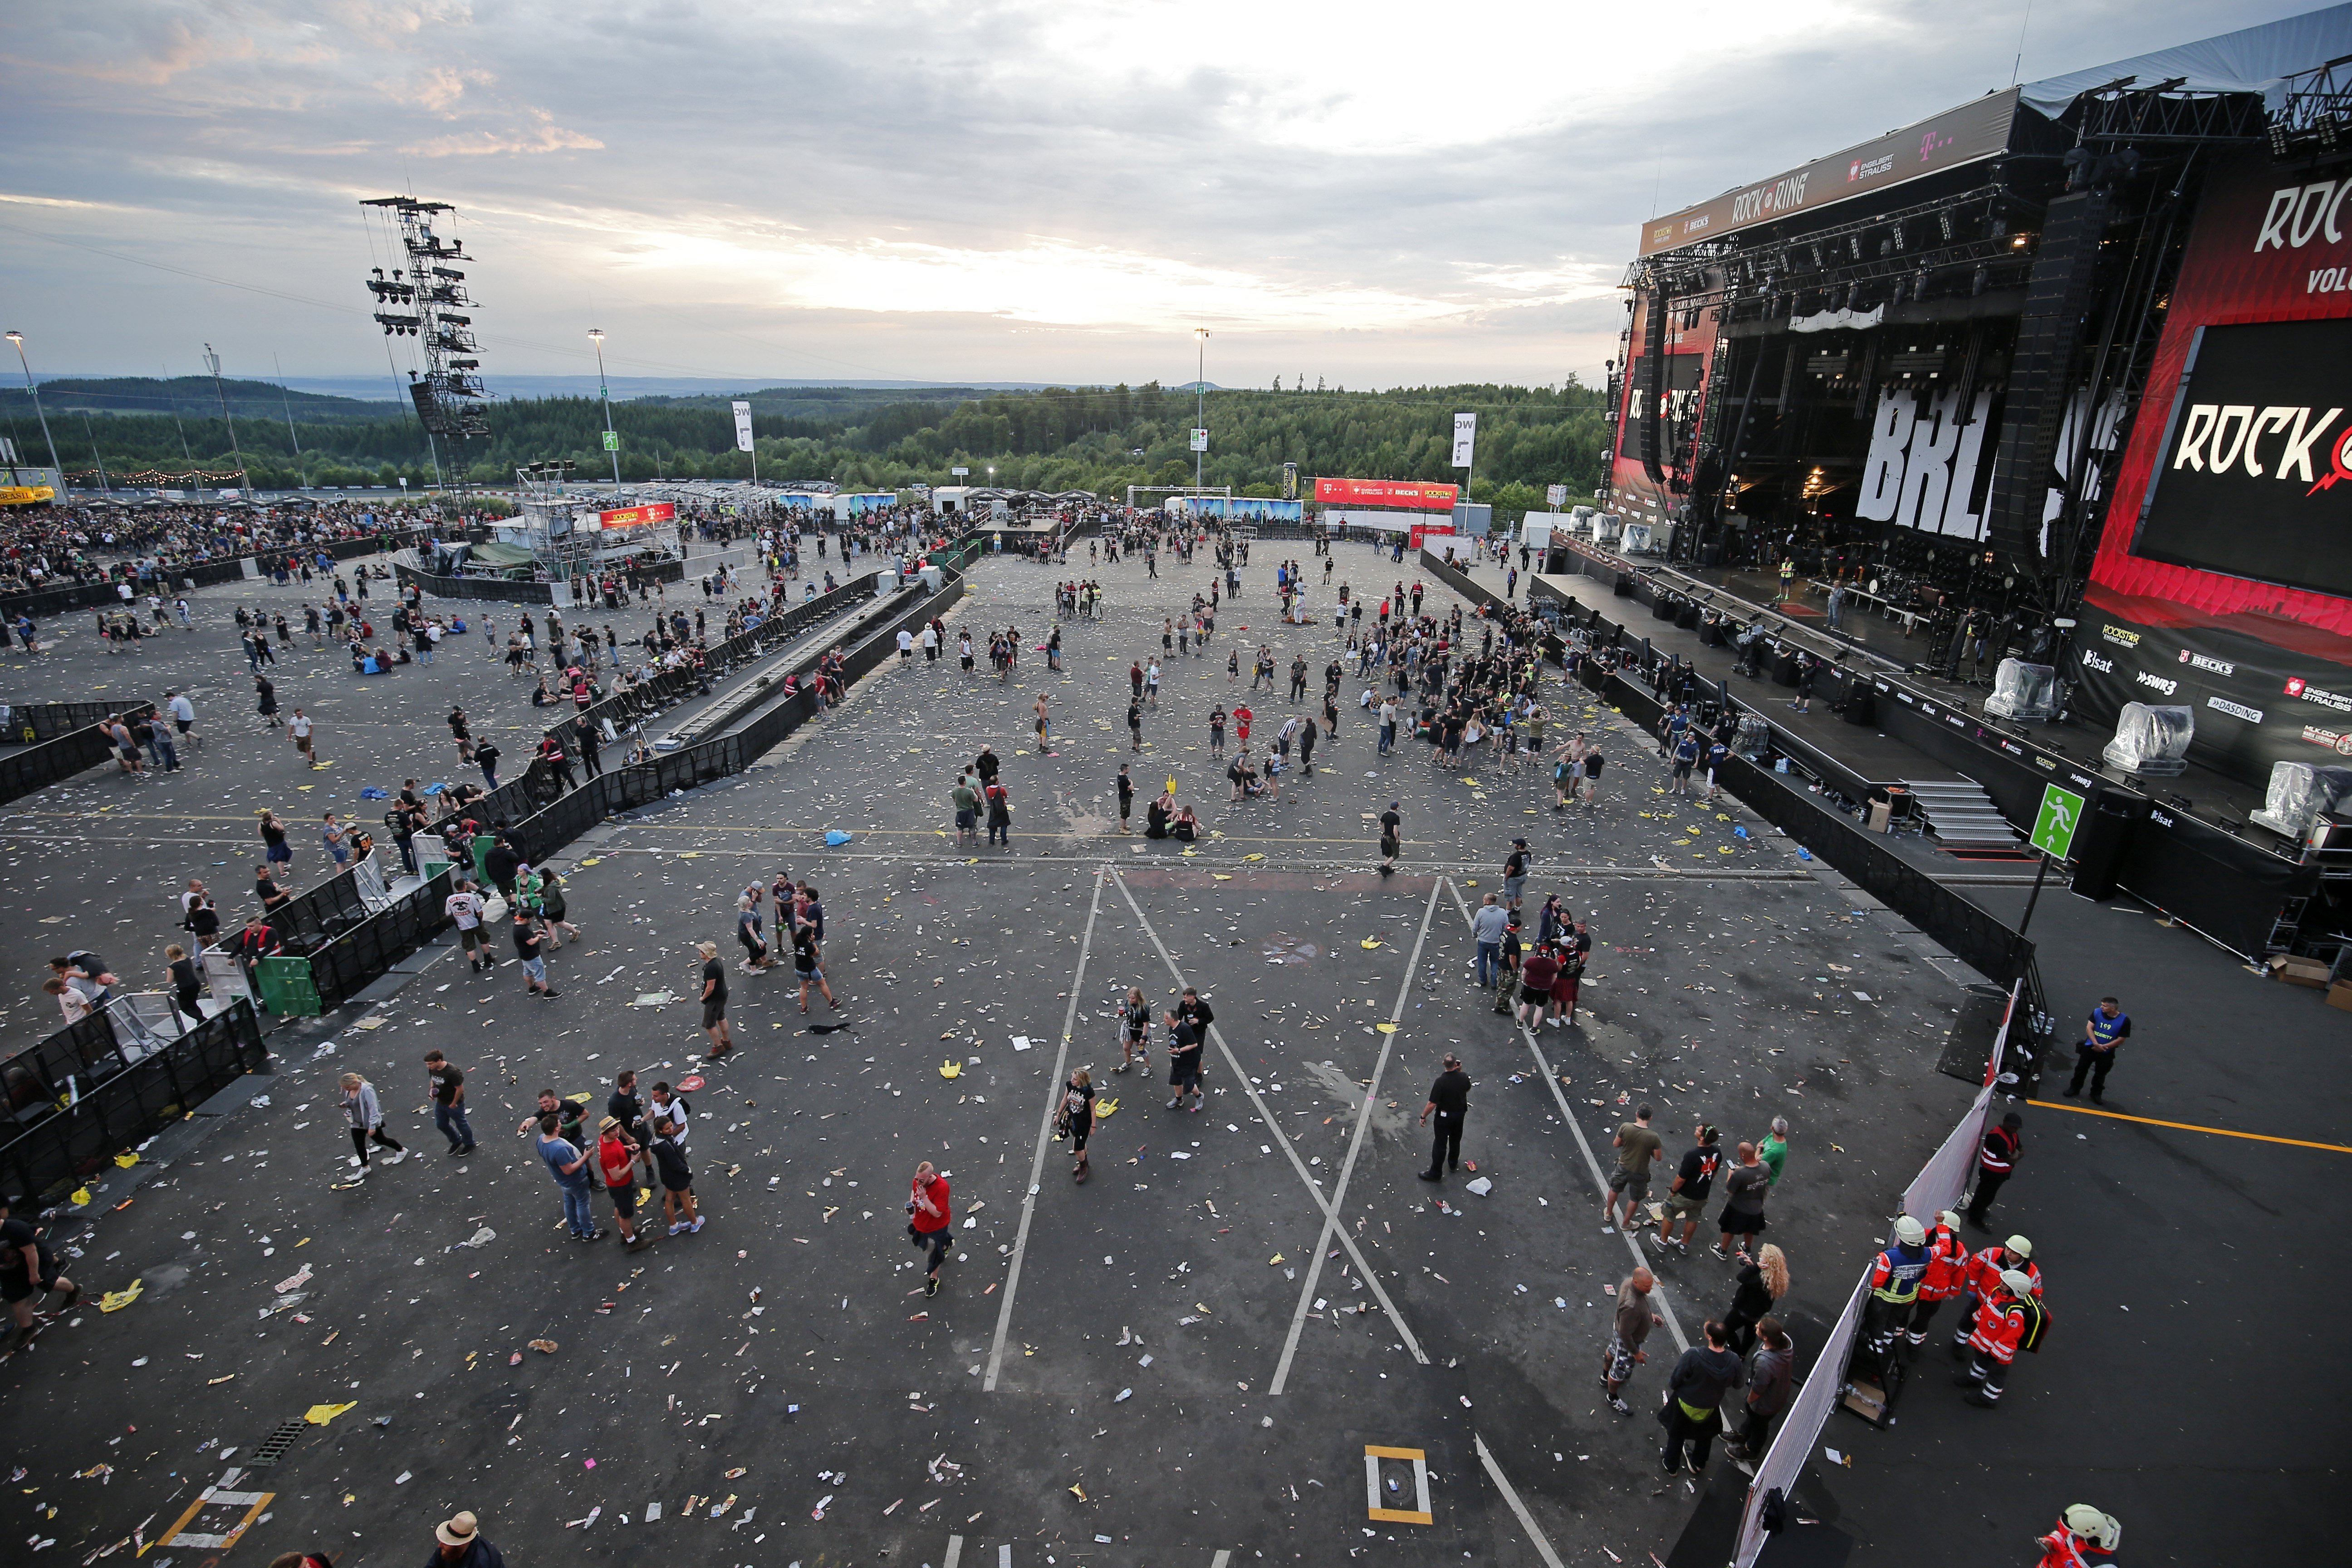 Se reanuda el festival de rock en Alemania tras suspenderlo por alarma terrorista